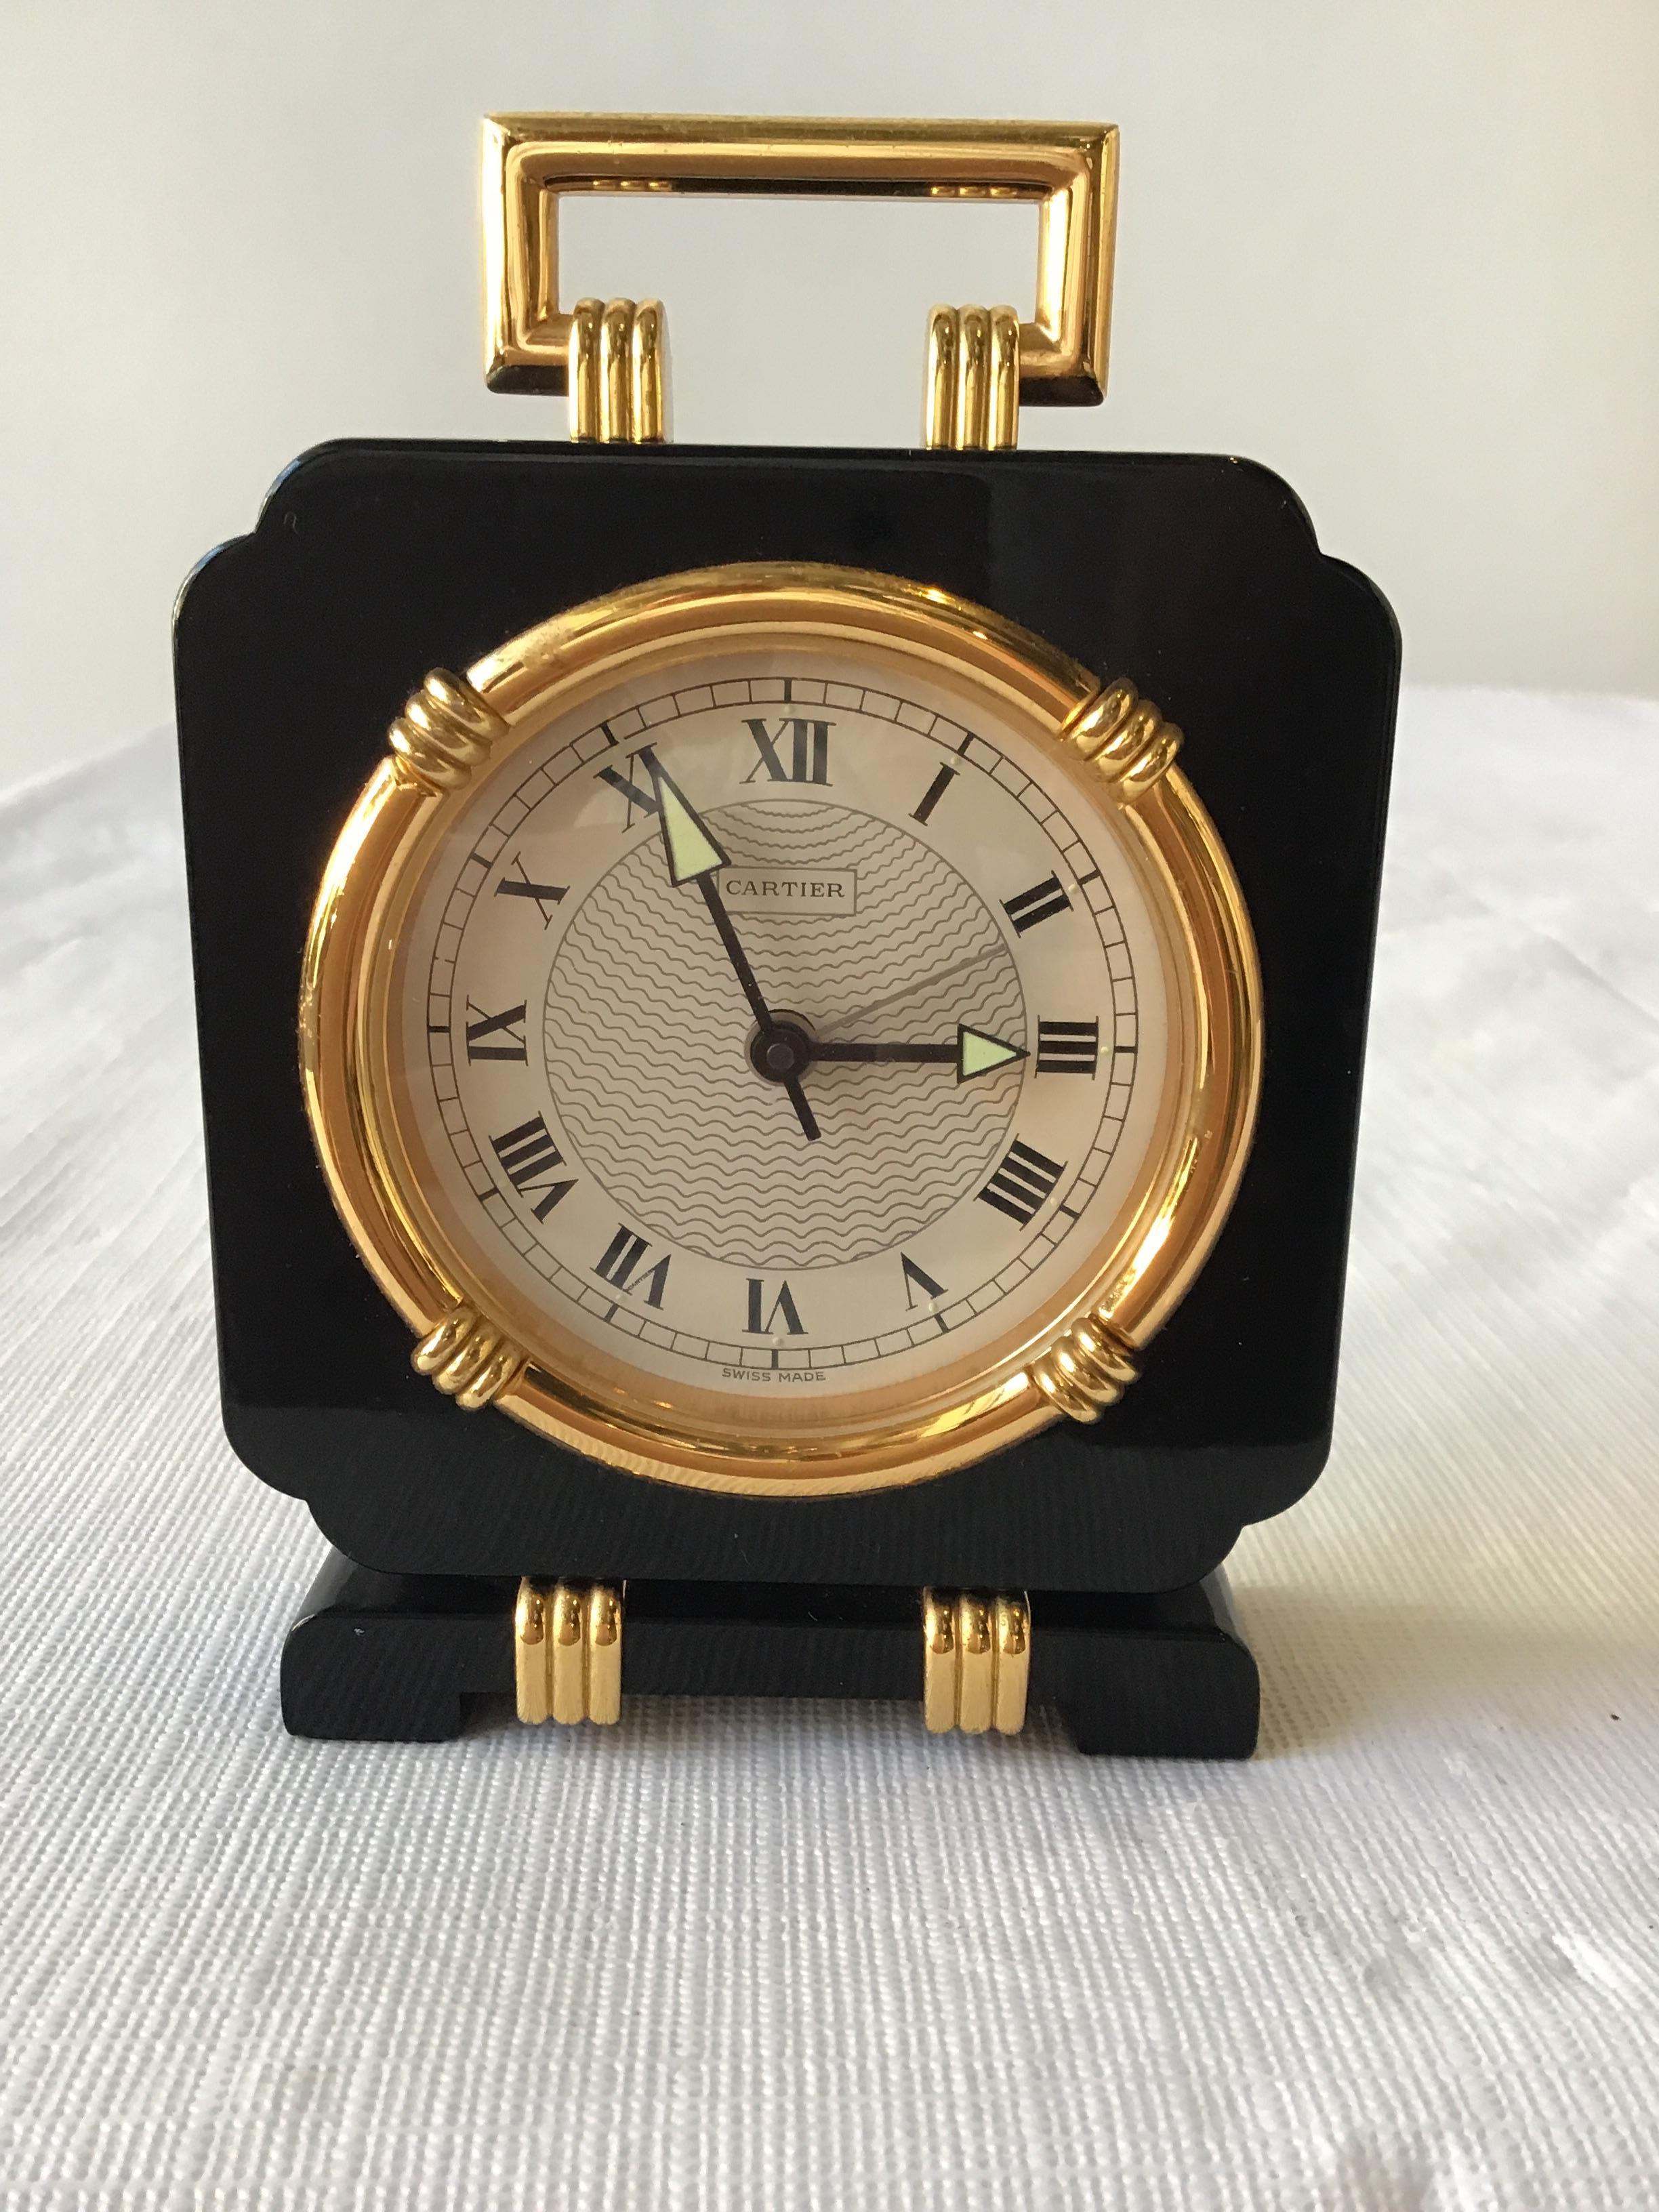 Cartier Marques et Modele Deposes black onyx quartz travel clock. Runs.